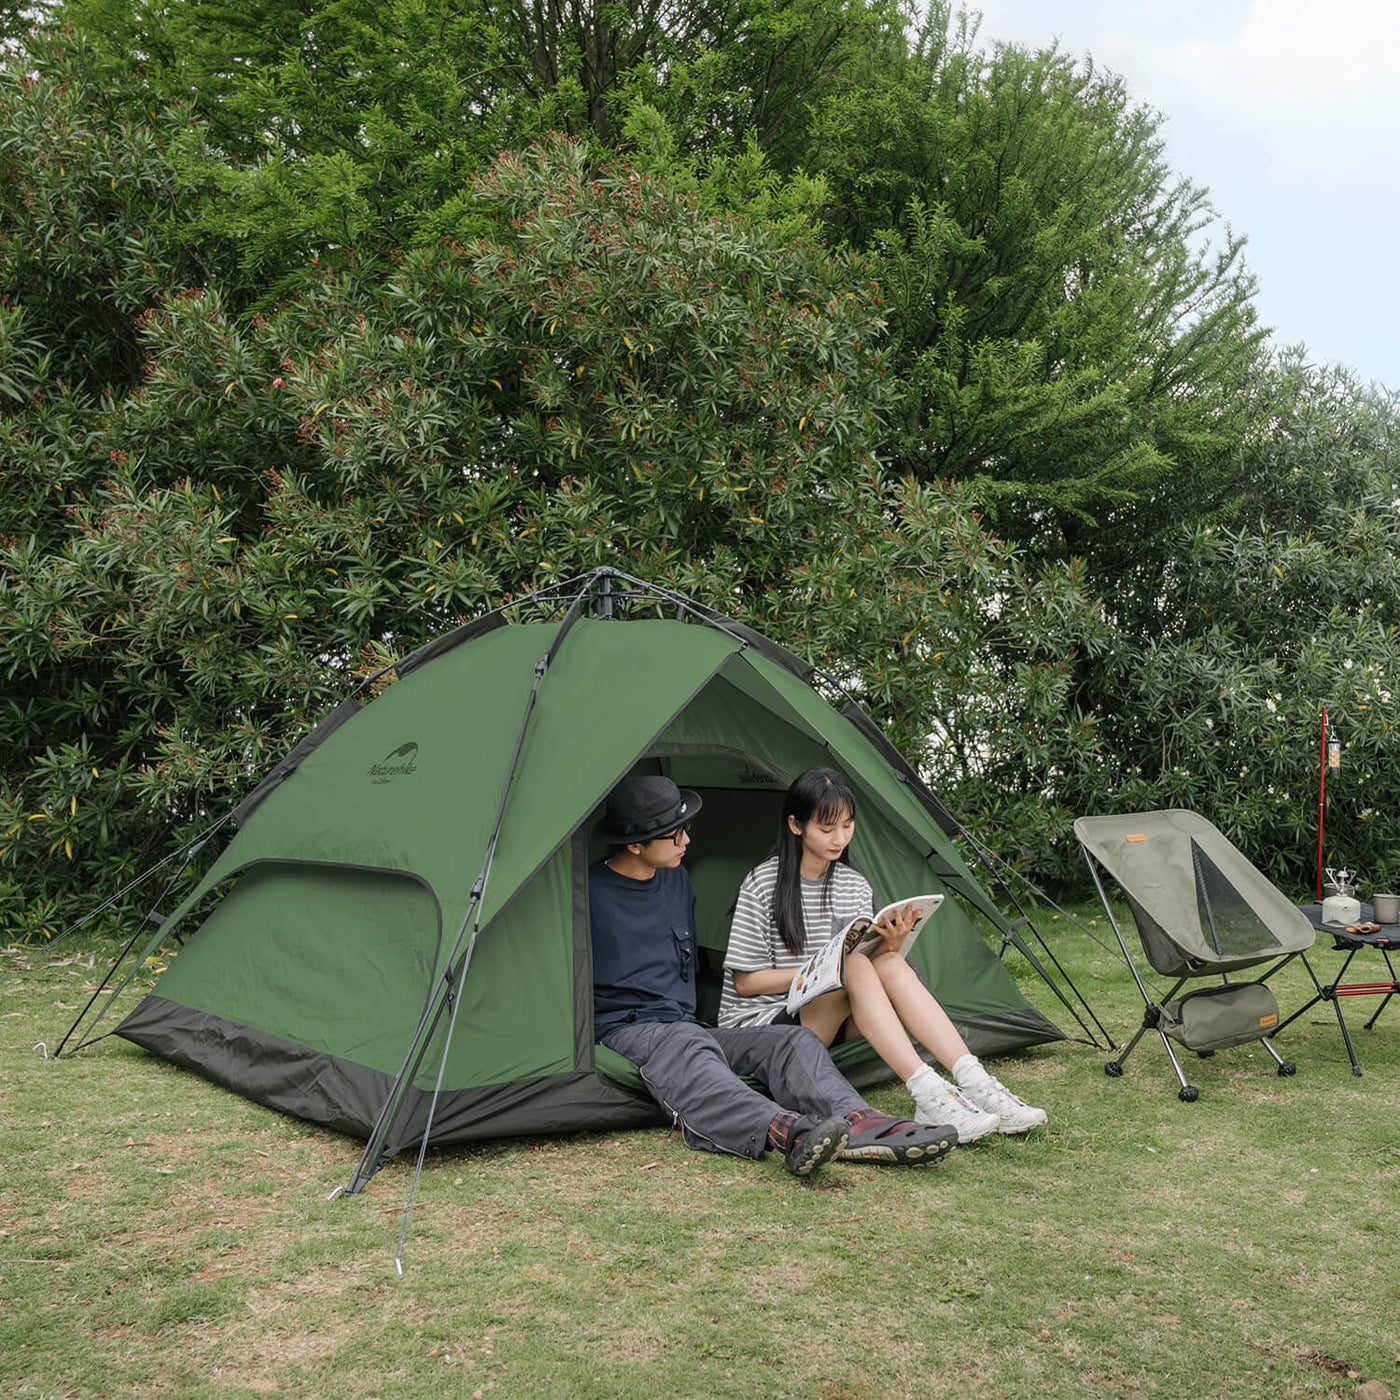 Tente de camping a montage automatique